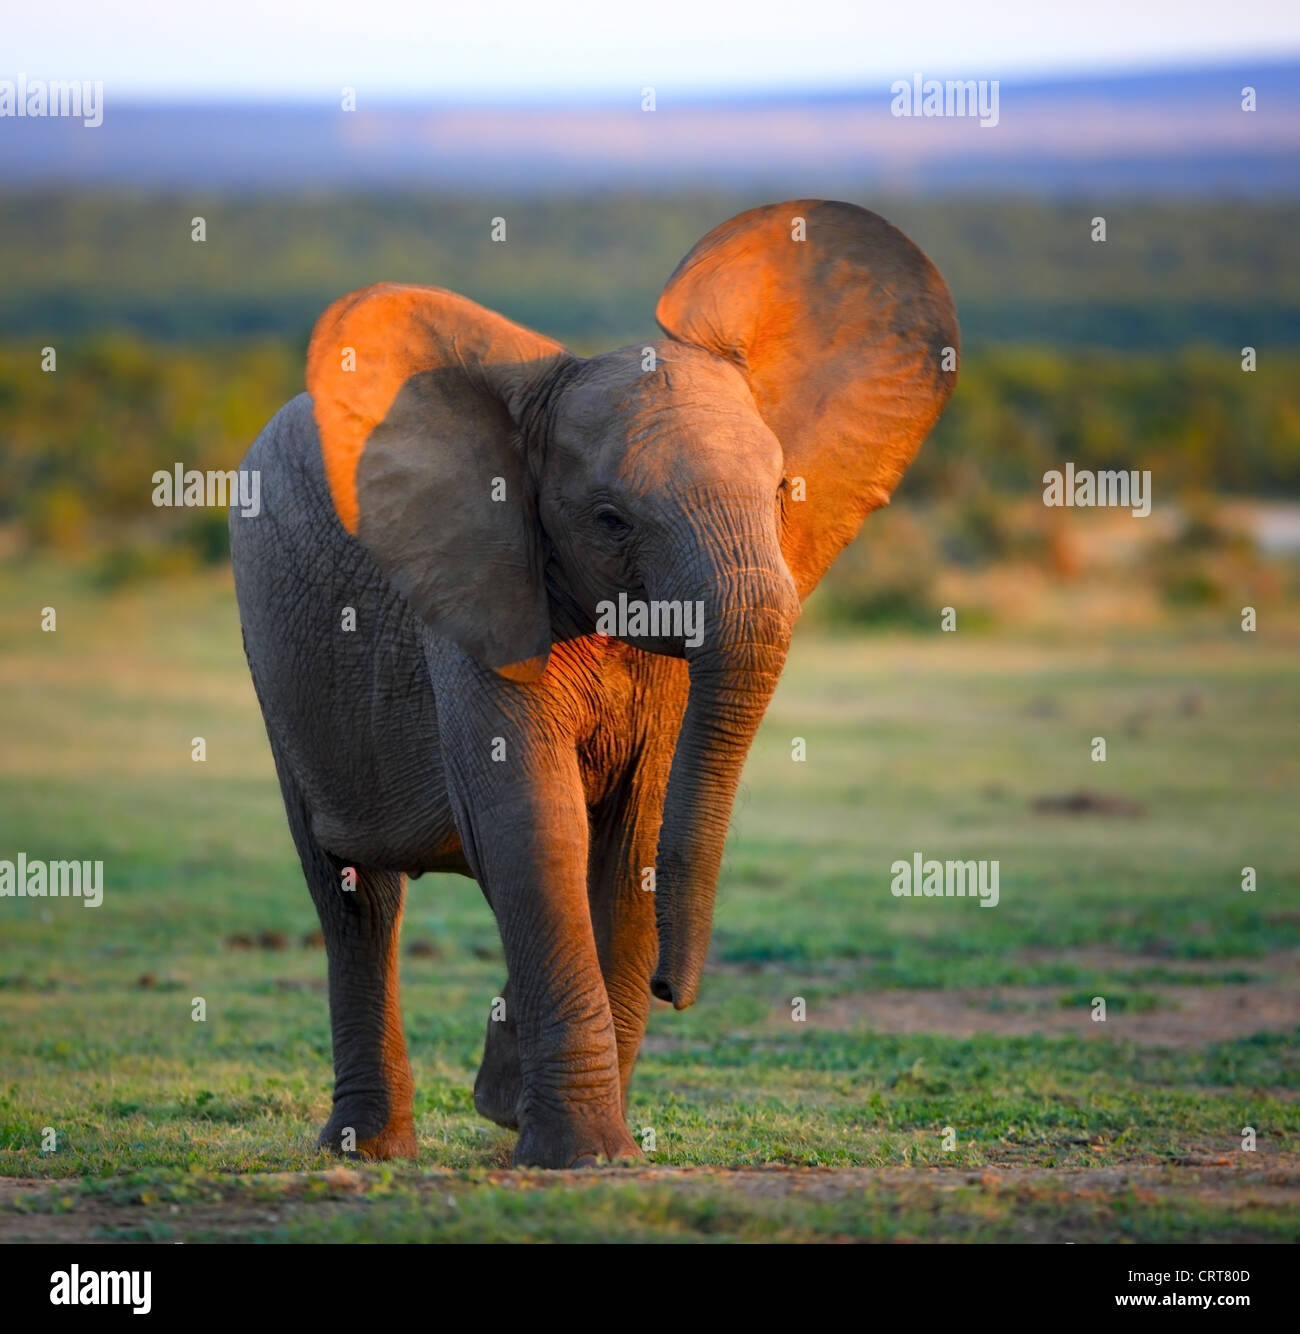 Baby-Elefant (Bewegungsunschärfe durch slow-Shutter - Gesicht im Fokus) Addo Elephant National Park - Südafrika Stockfoto